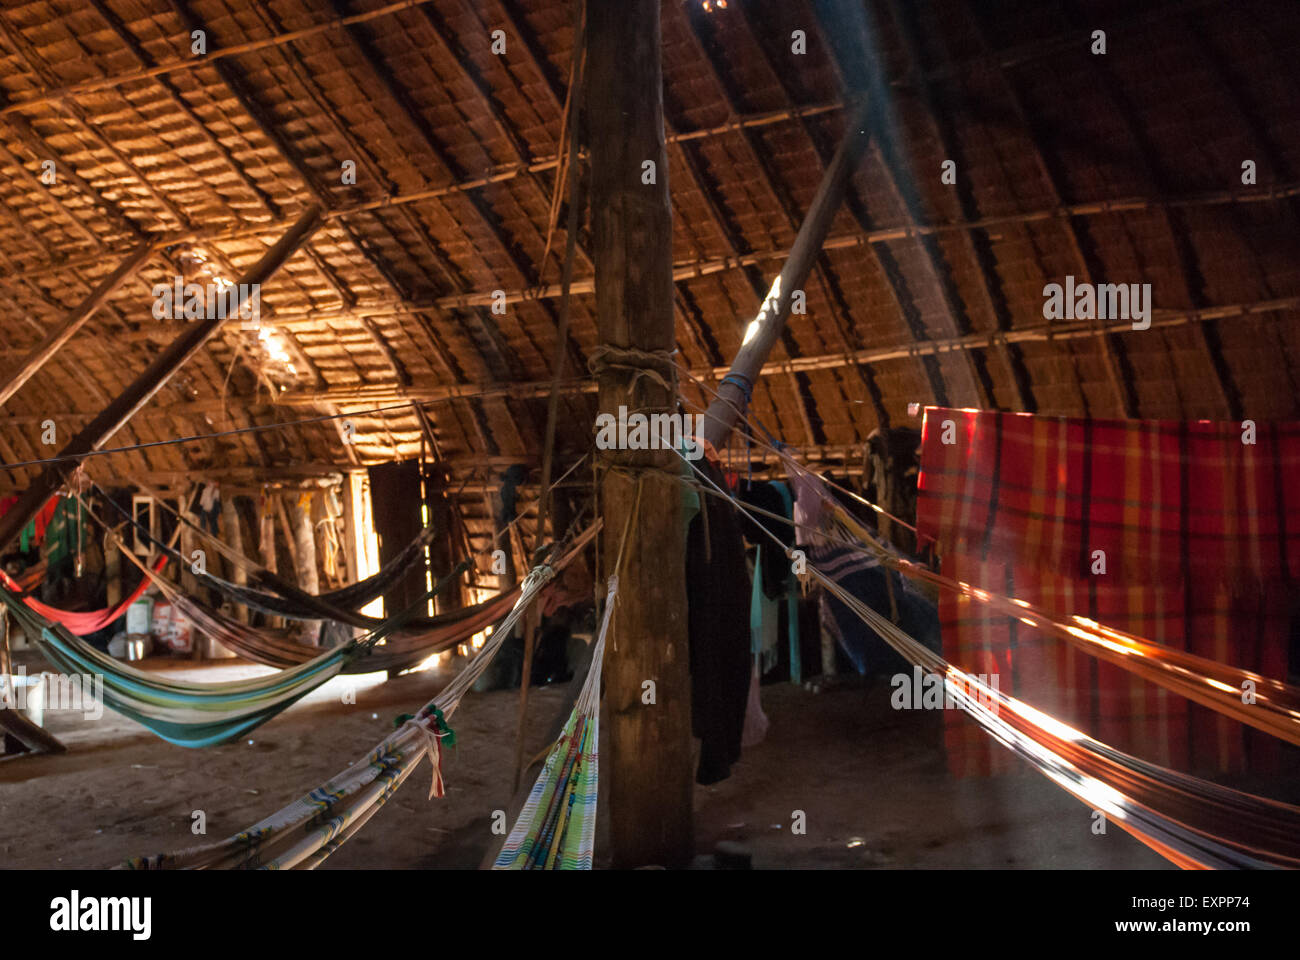 Le parc indigène du Xingu, Mato Grosso, Brésil. Aldeia. Matipu Guest house l'Oca traditionnel dans des hamacs. Banque D'Images